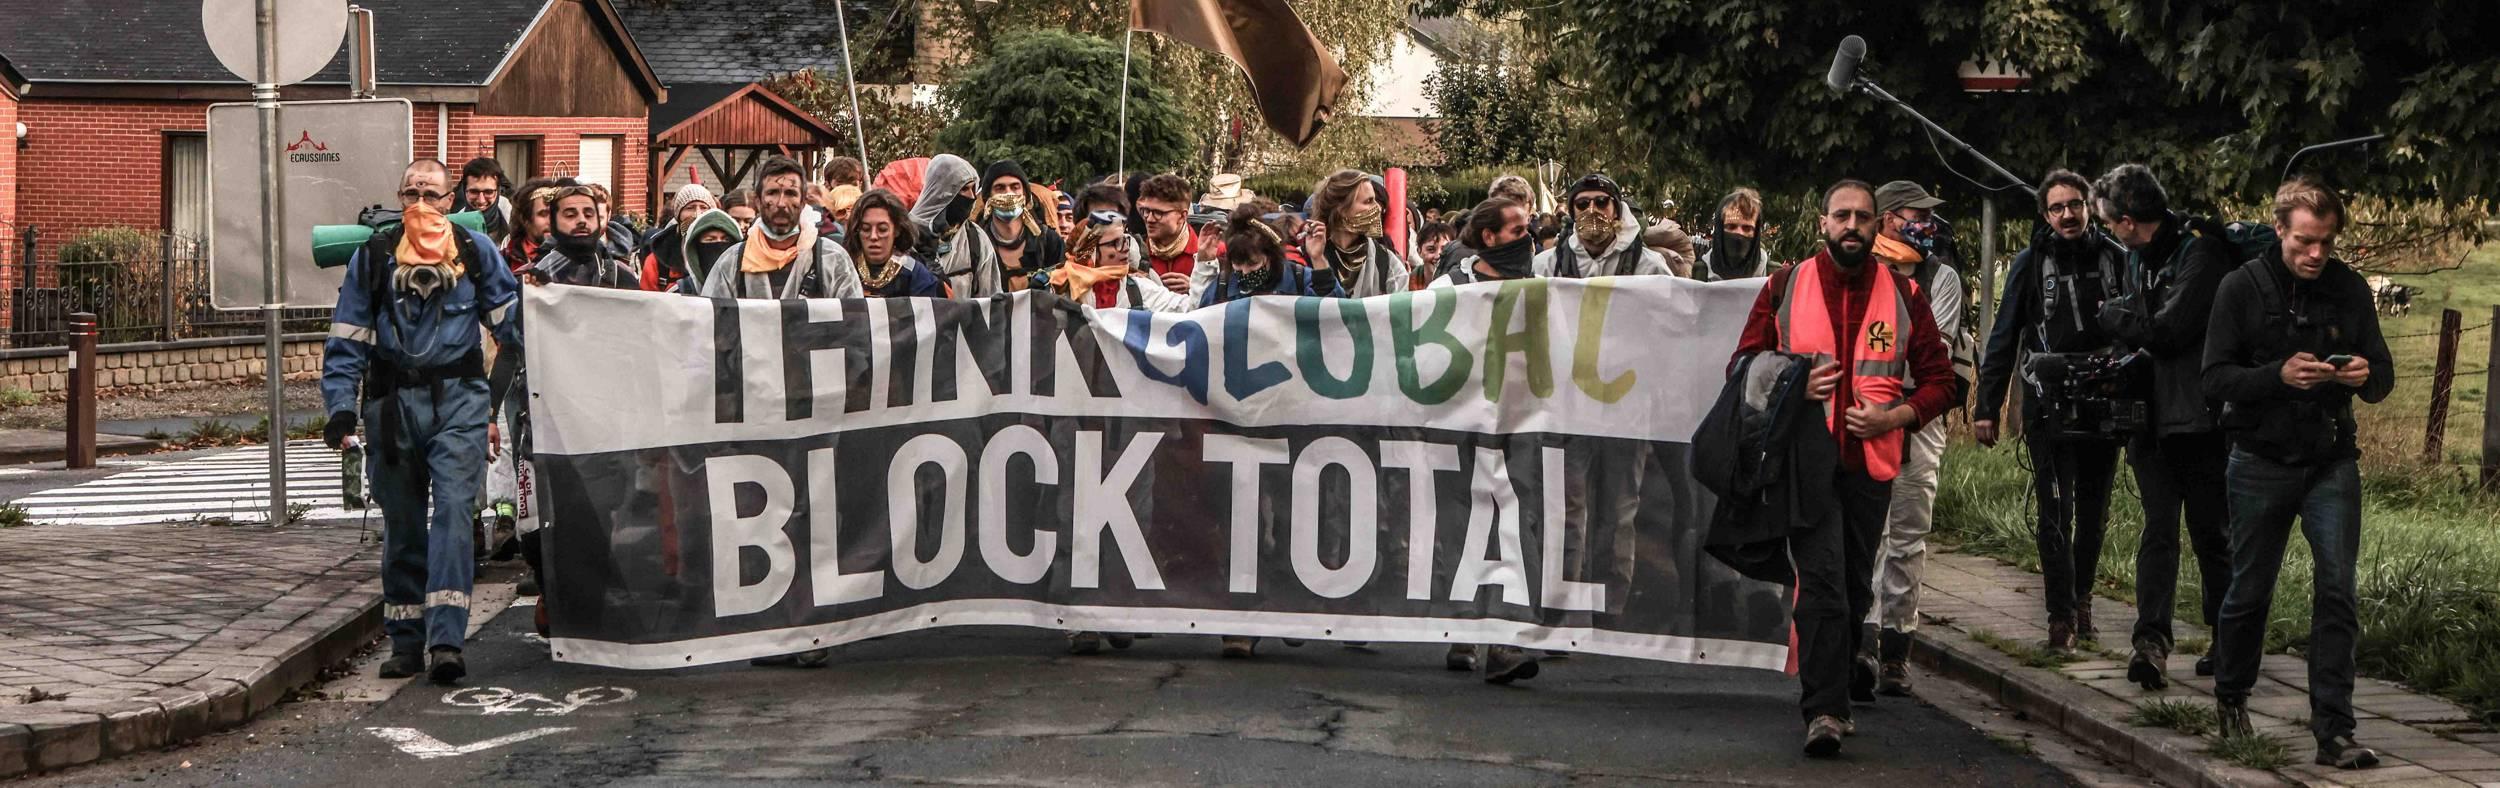 Een betoging in de straat. Op een spandoek staat "think global stop total"